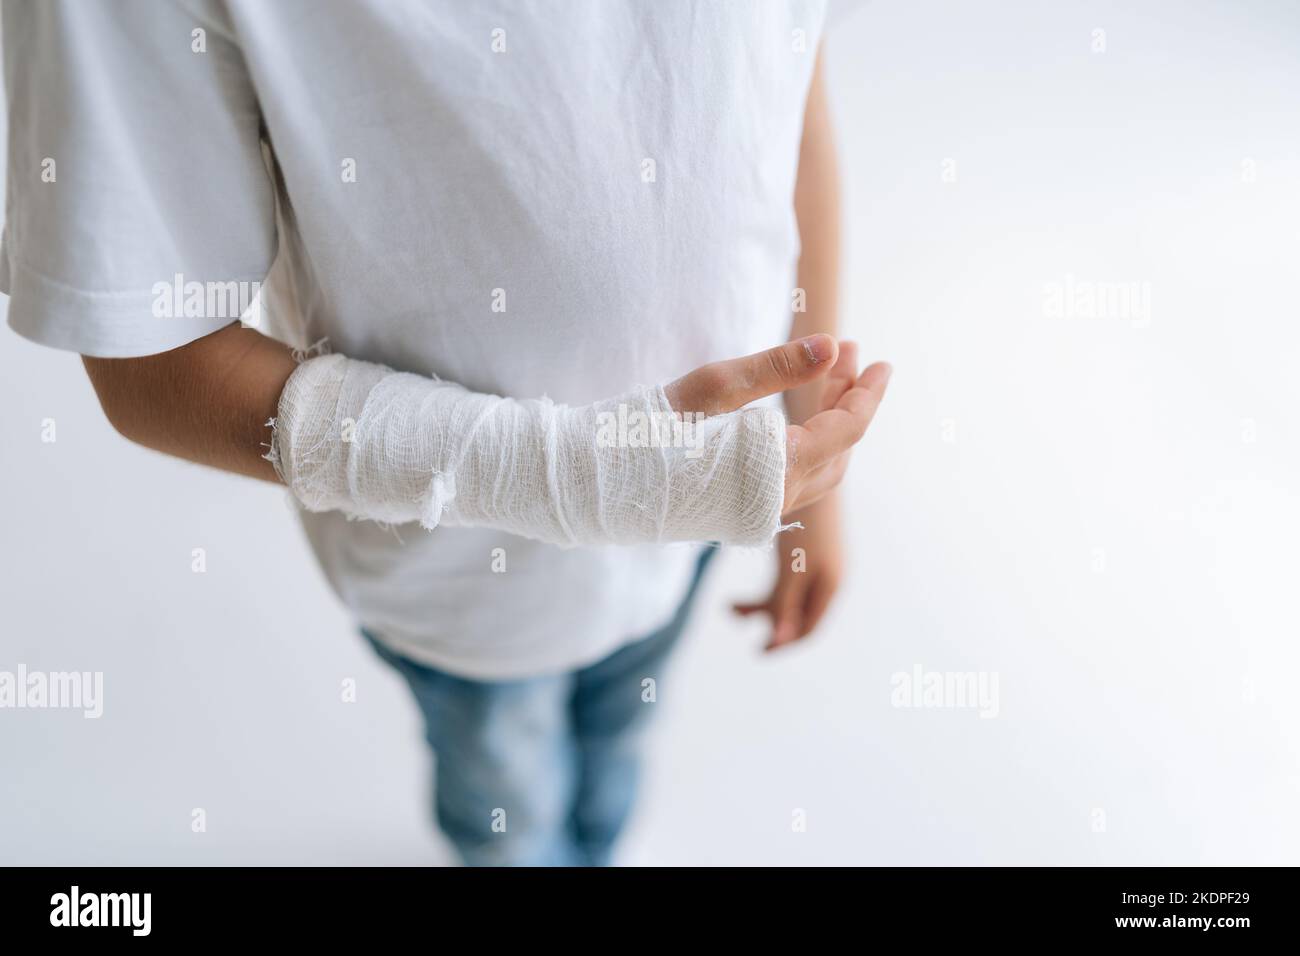 Nahaufnahme eines unerkennbaren kleinen Mädchens mit gebrochener Hand, eingewickelt in einen Gipsverband, das auf einem weißen, isolierten Hintergrund steht. Stockfoto